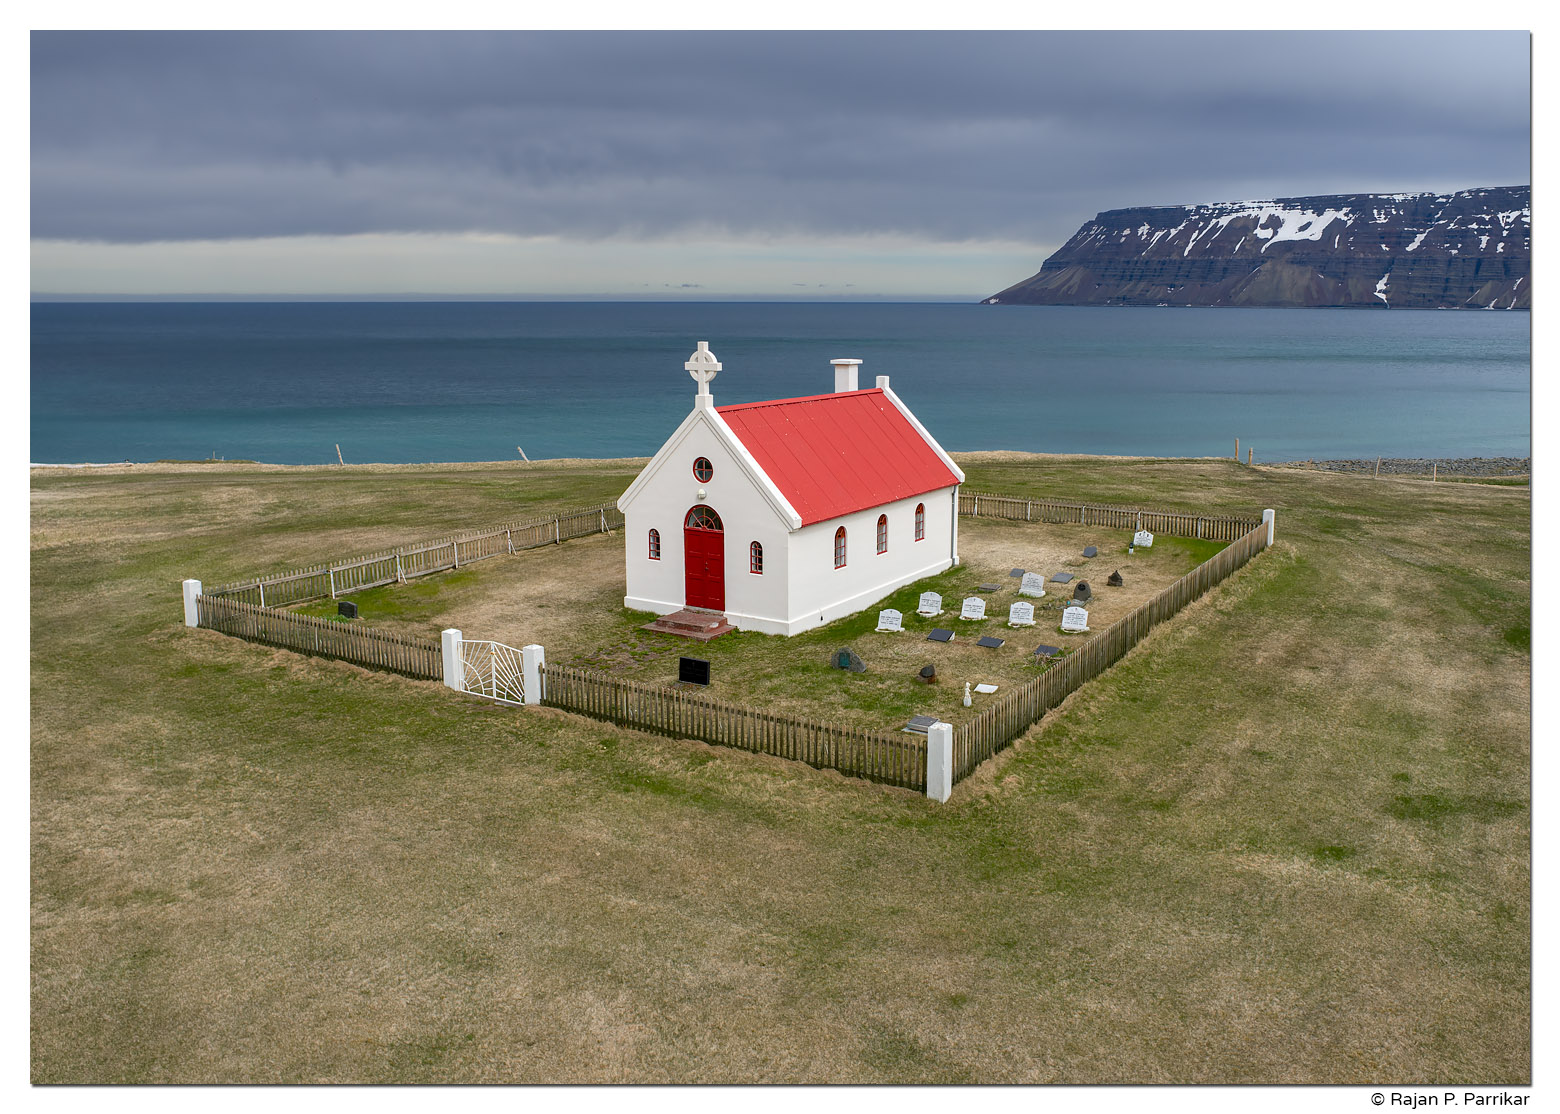 Sæból church in Ingjaldssandur, Önundarfjörður, Iceland